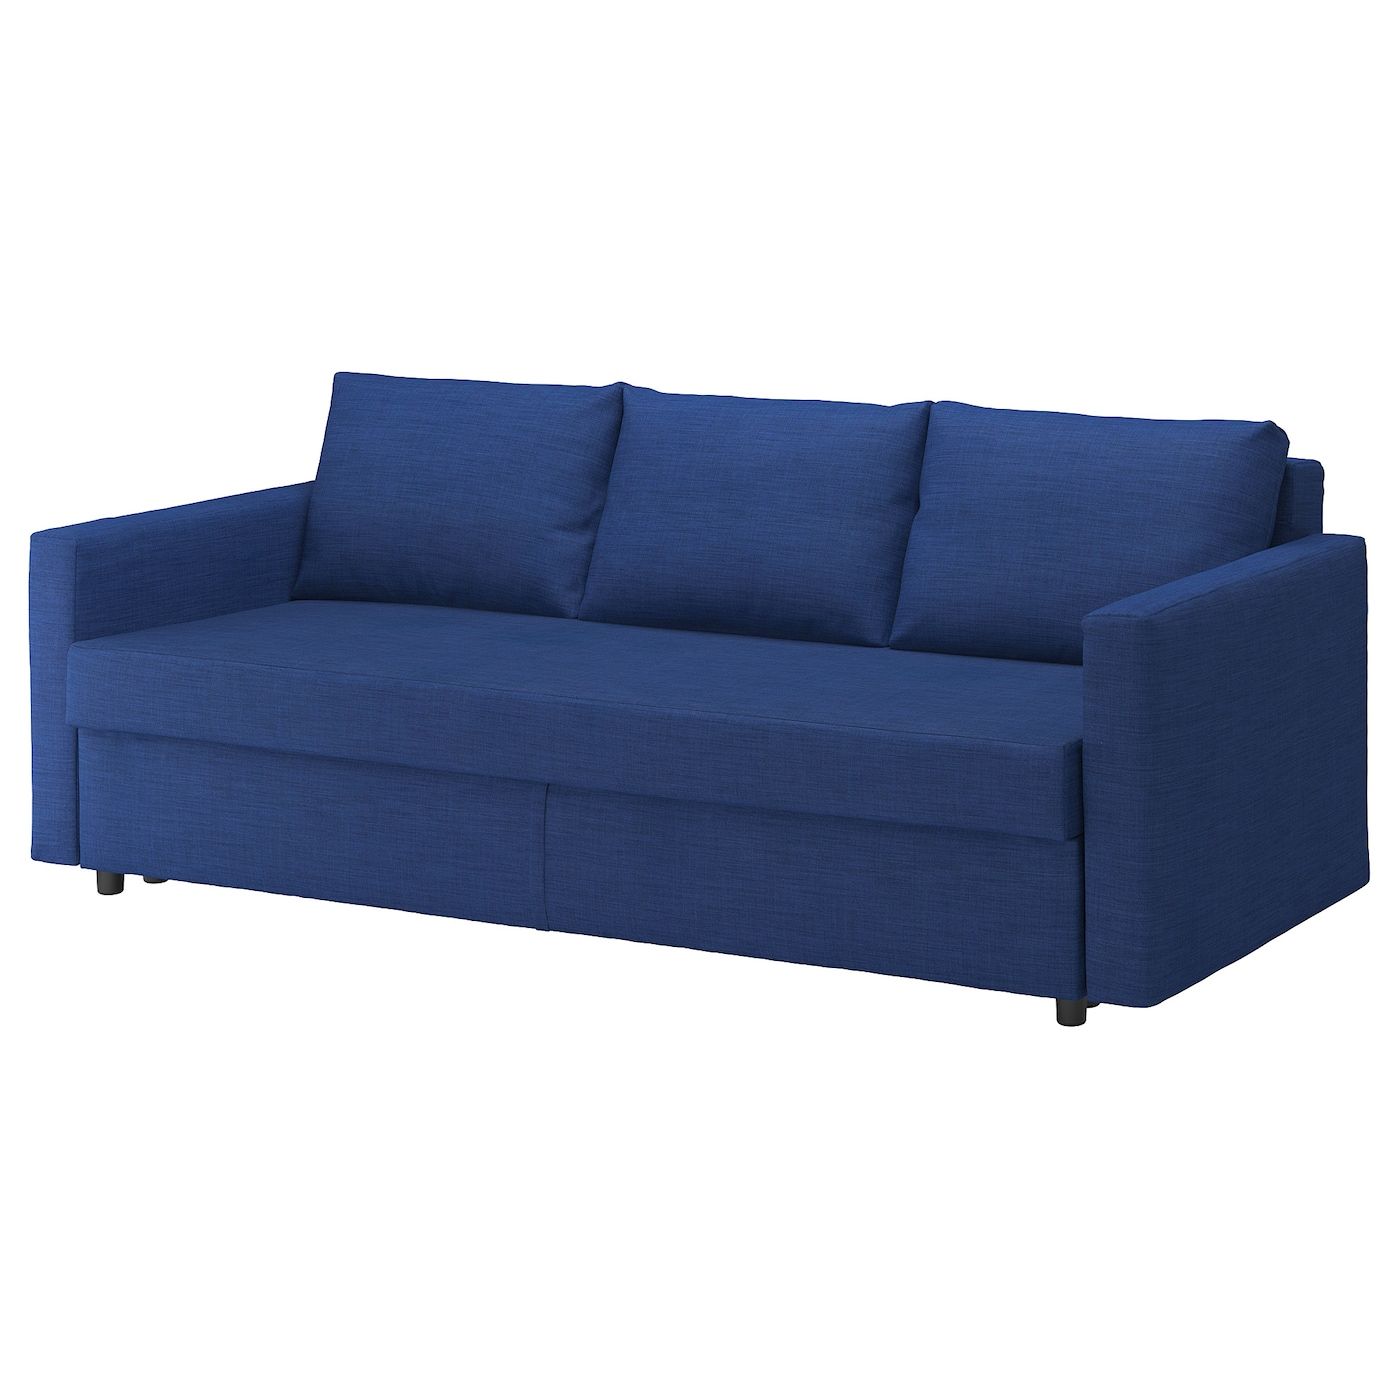 Friheten Sleeper Sofa, Skiftebo Blue – Ikea Intended For Sofas In Blue (Photo 10 of 15)